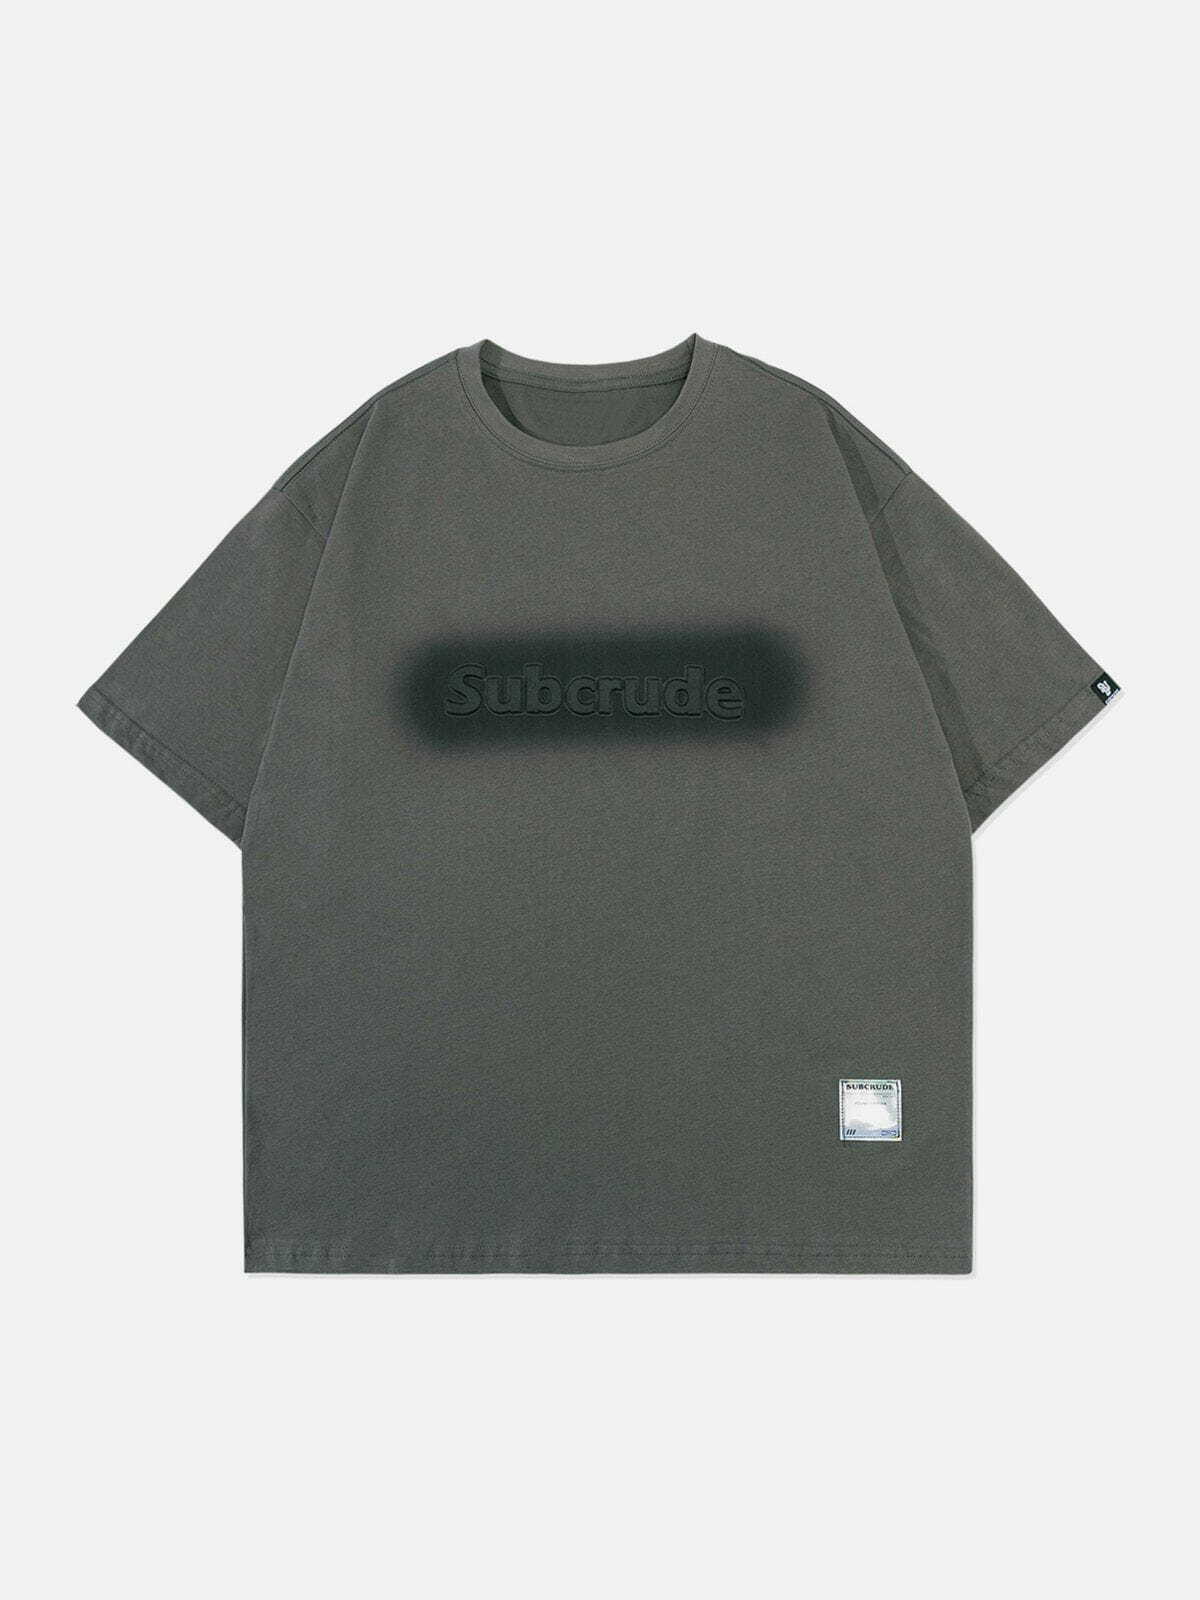 retro blur print tshirt edgy  vibrant streetwear essential 8240